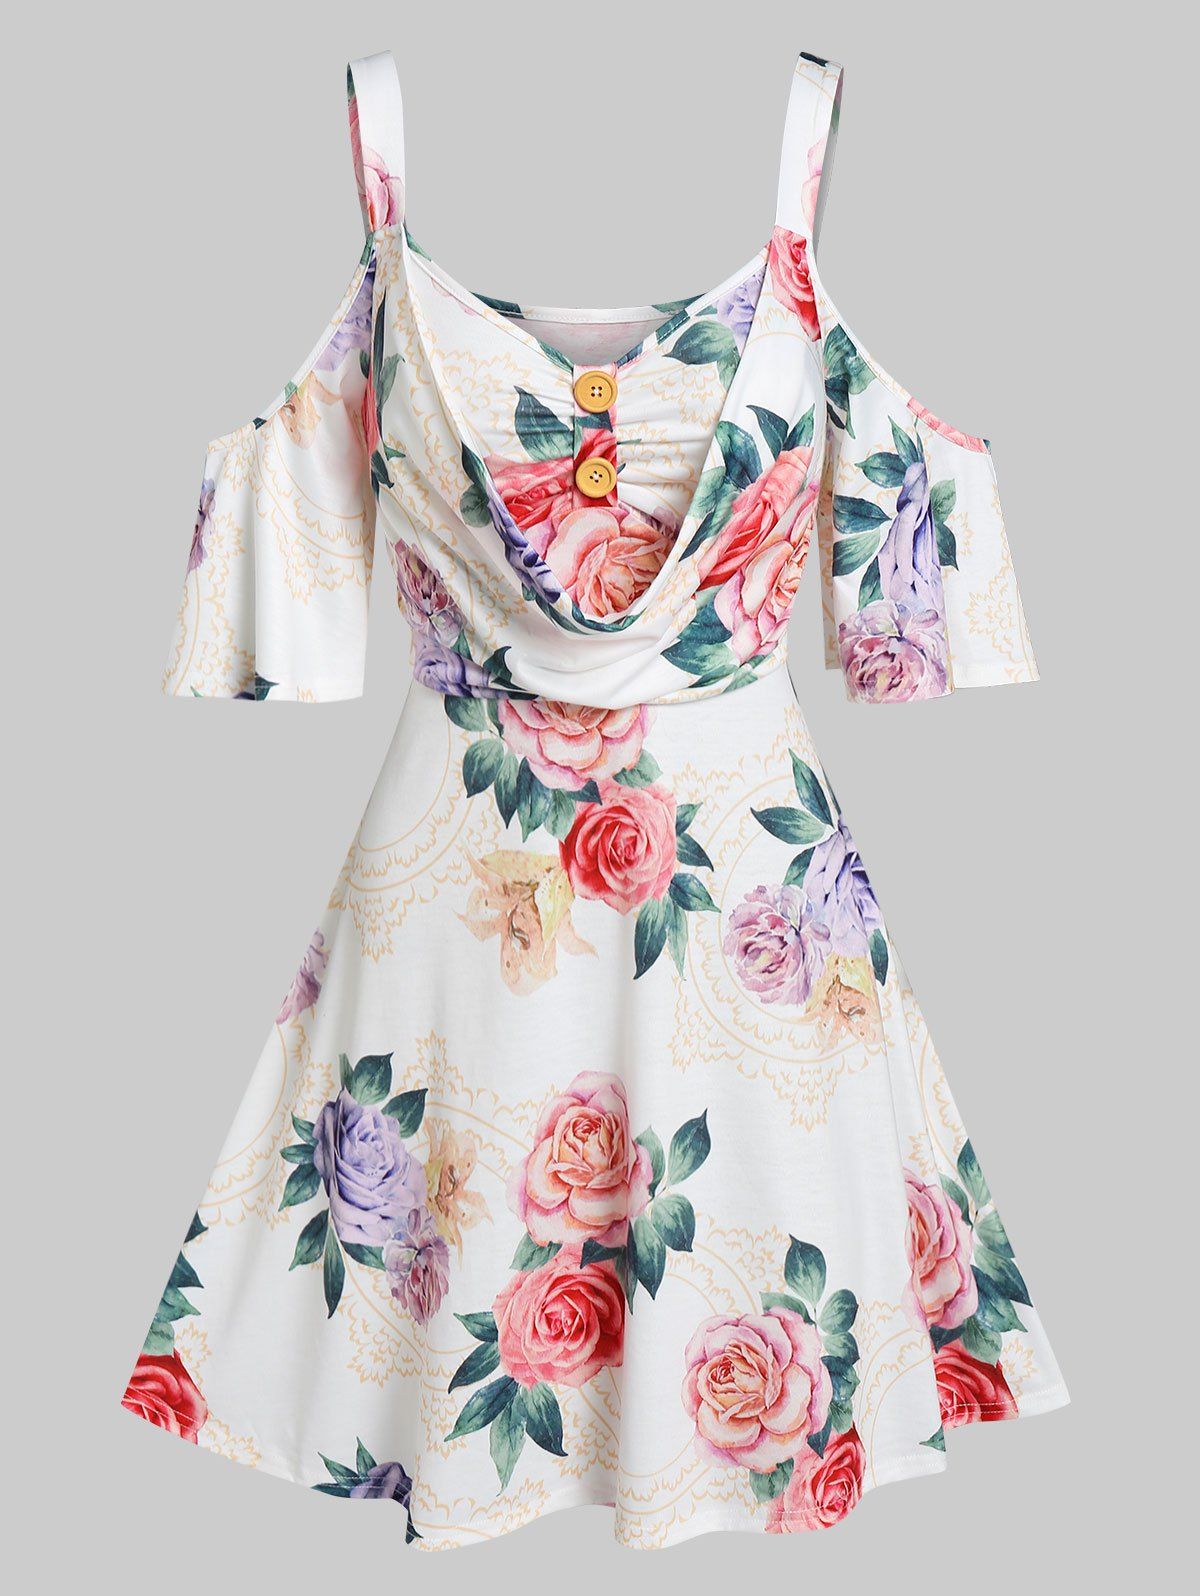 Flower Print Cold Shoulder 2 In 1 Dress - WHITE XXXL